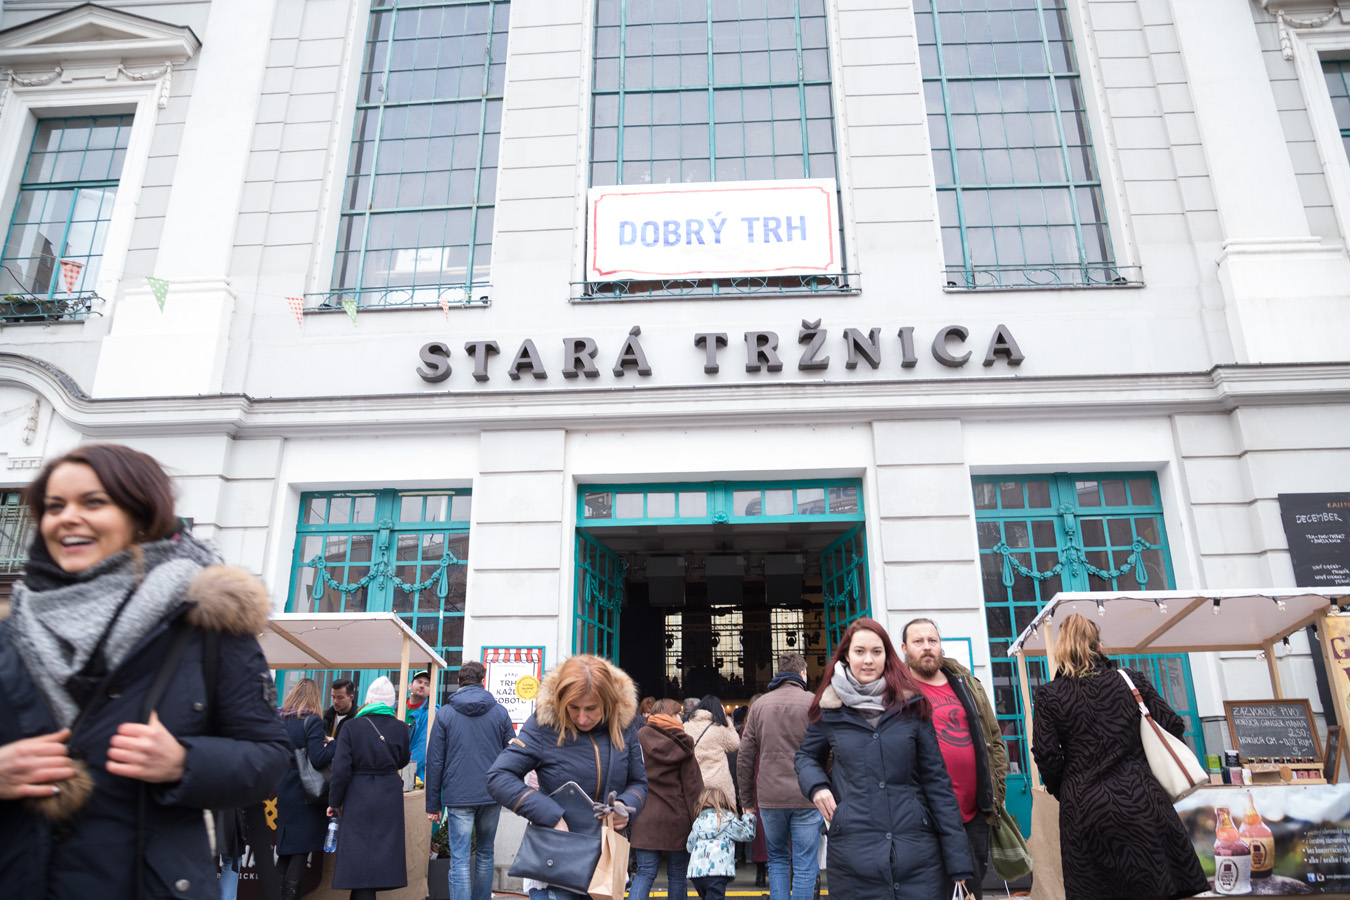 Dobry Trh market in Stara Trznica - Bratislava Dec. 16, 2017